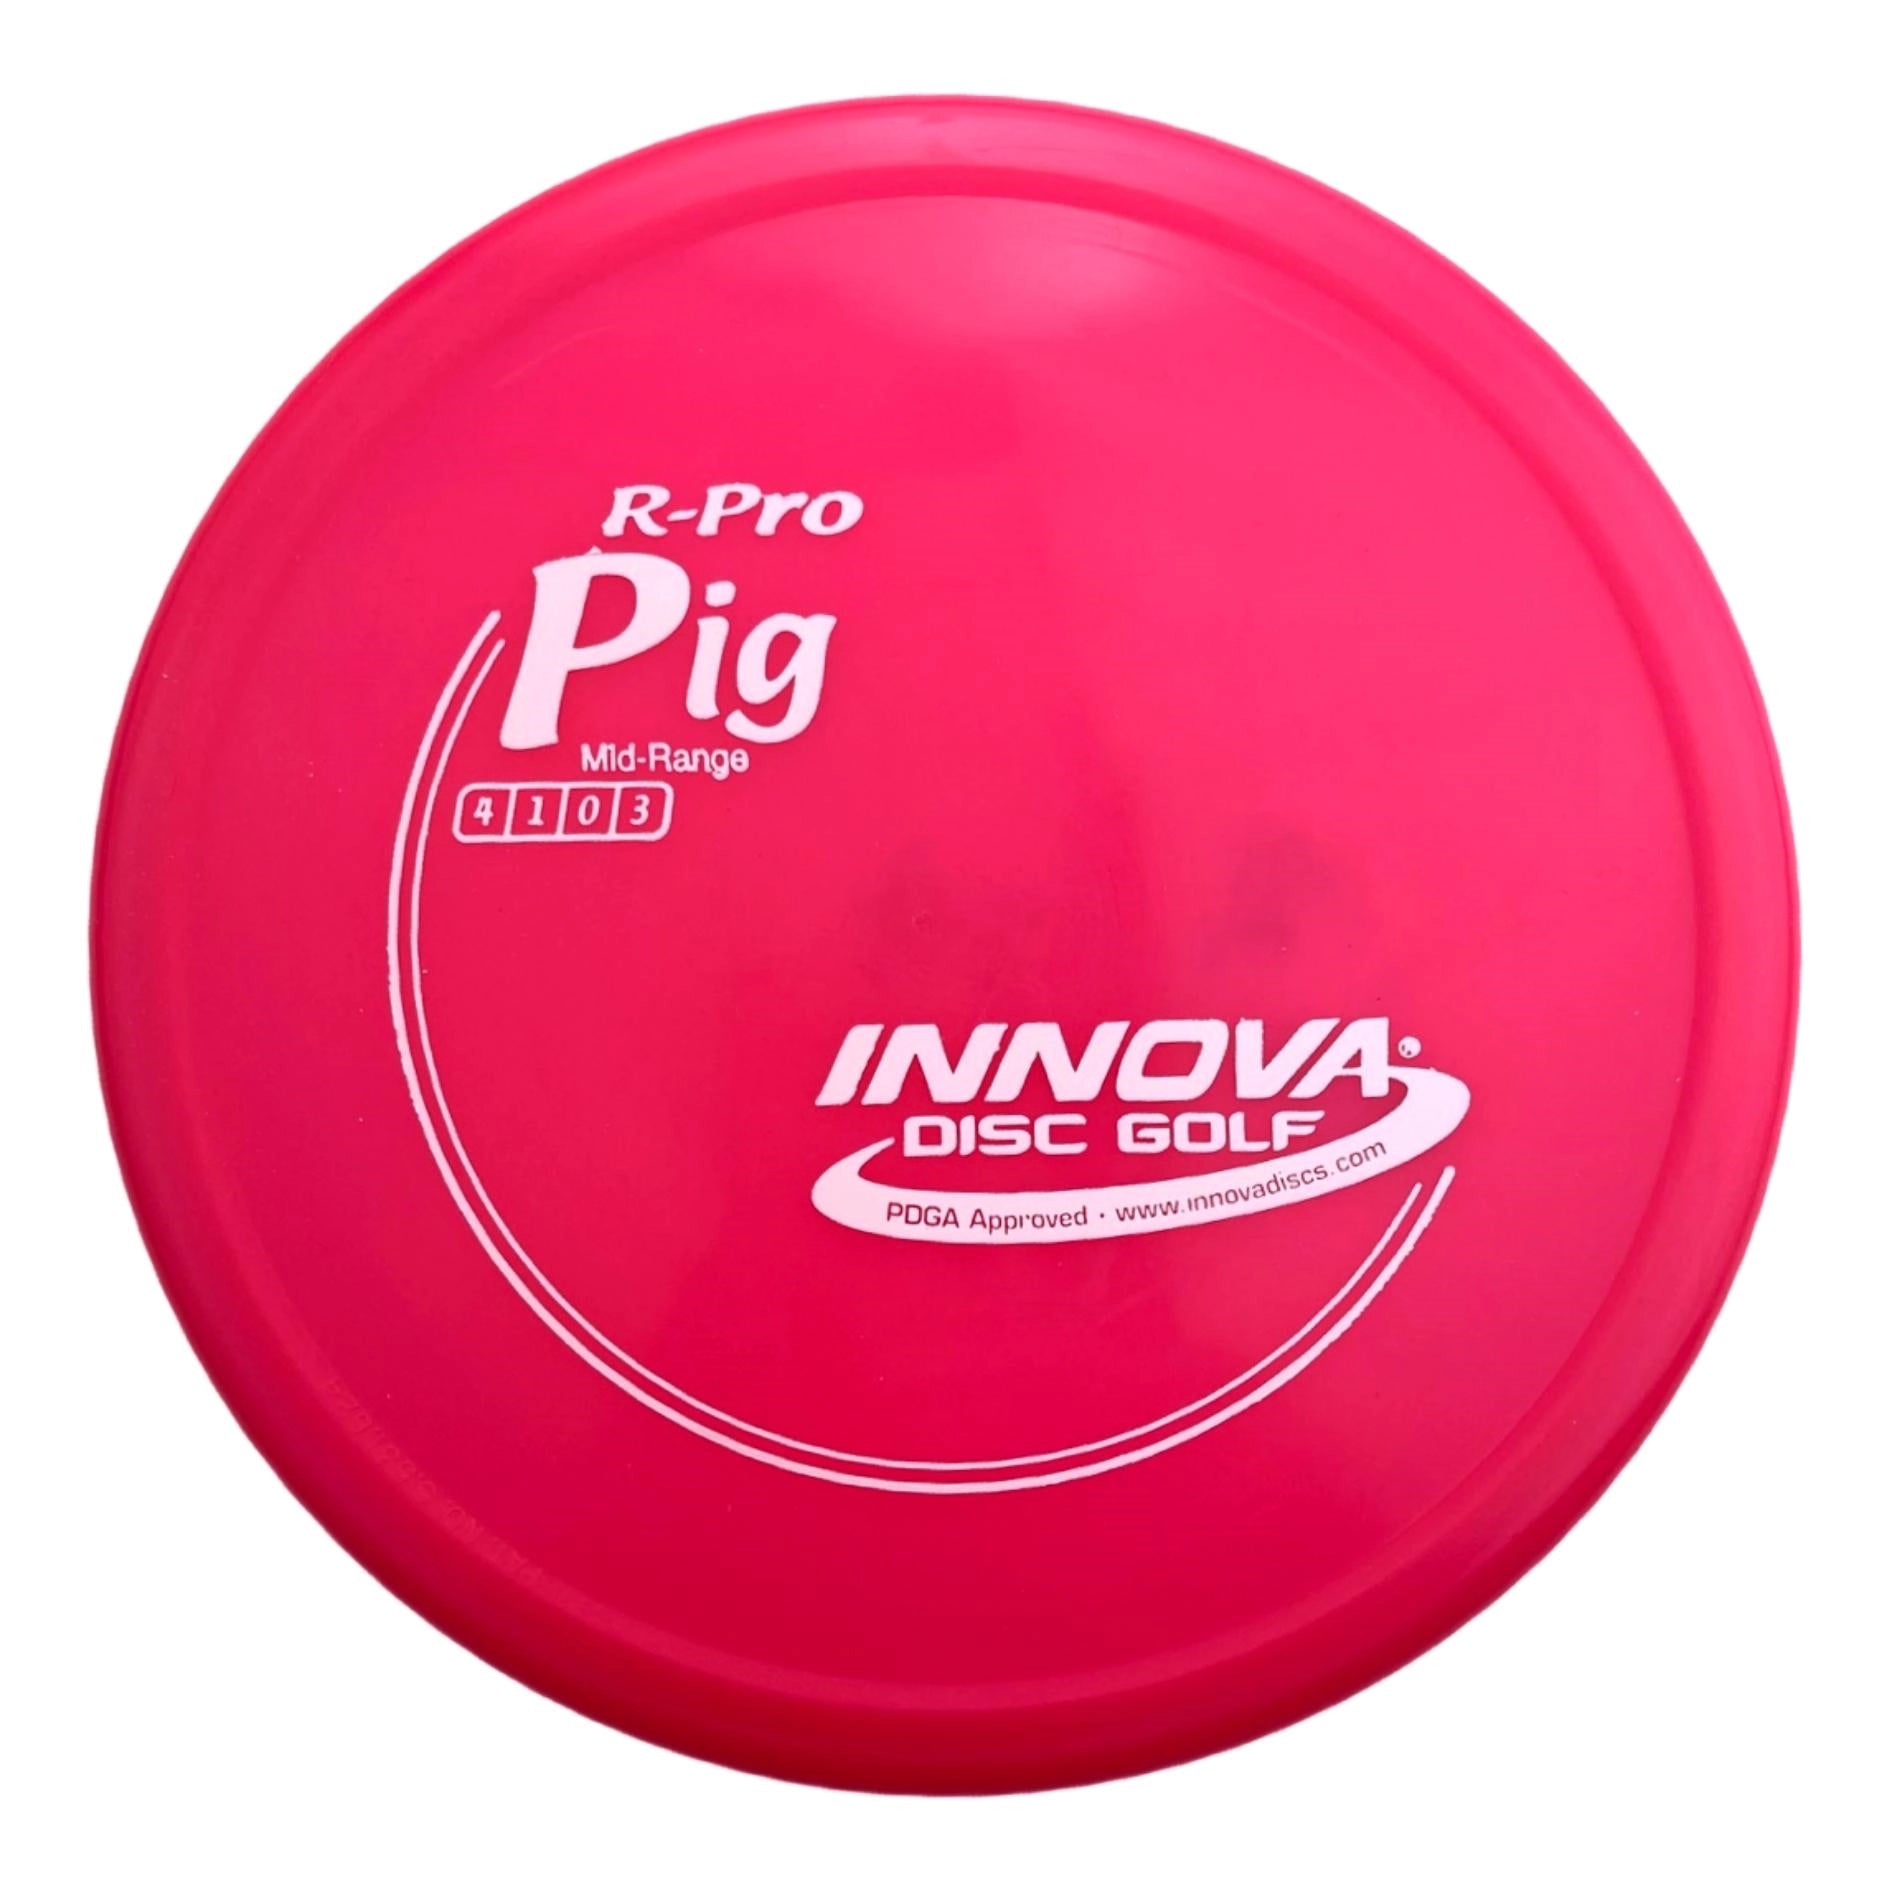 Innova Pig (R-Pro)